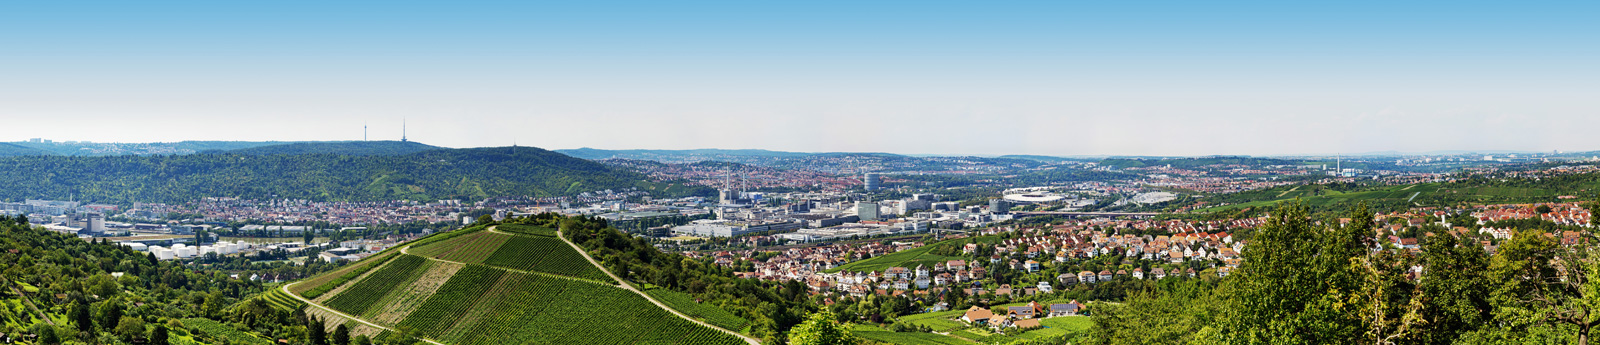 360 Grad Fotografie Stuttgart, Gigapixel, Luftaufnahmen, Drohnen-Fotografie